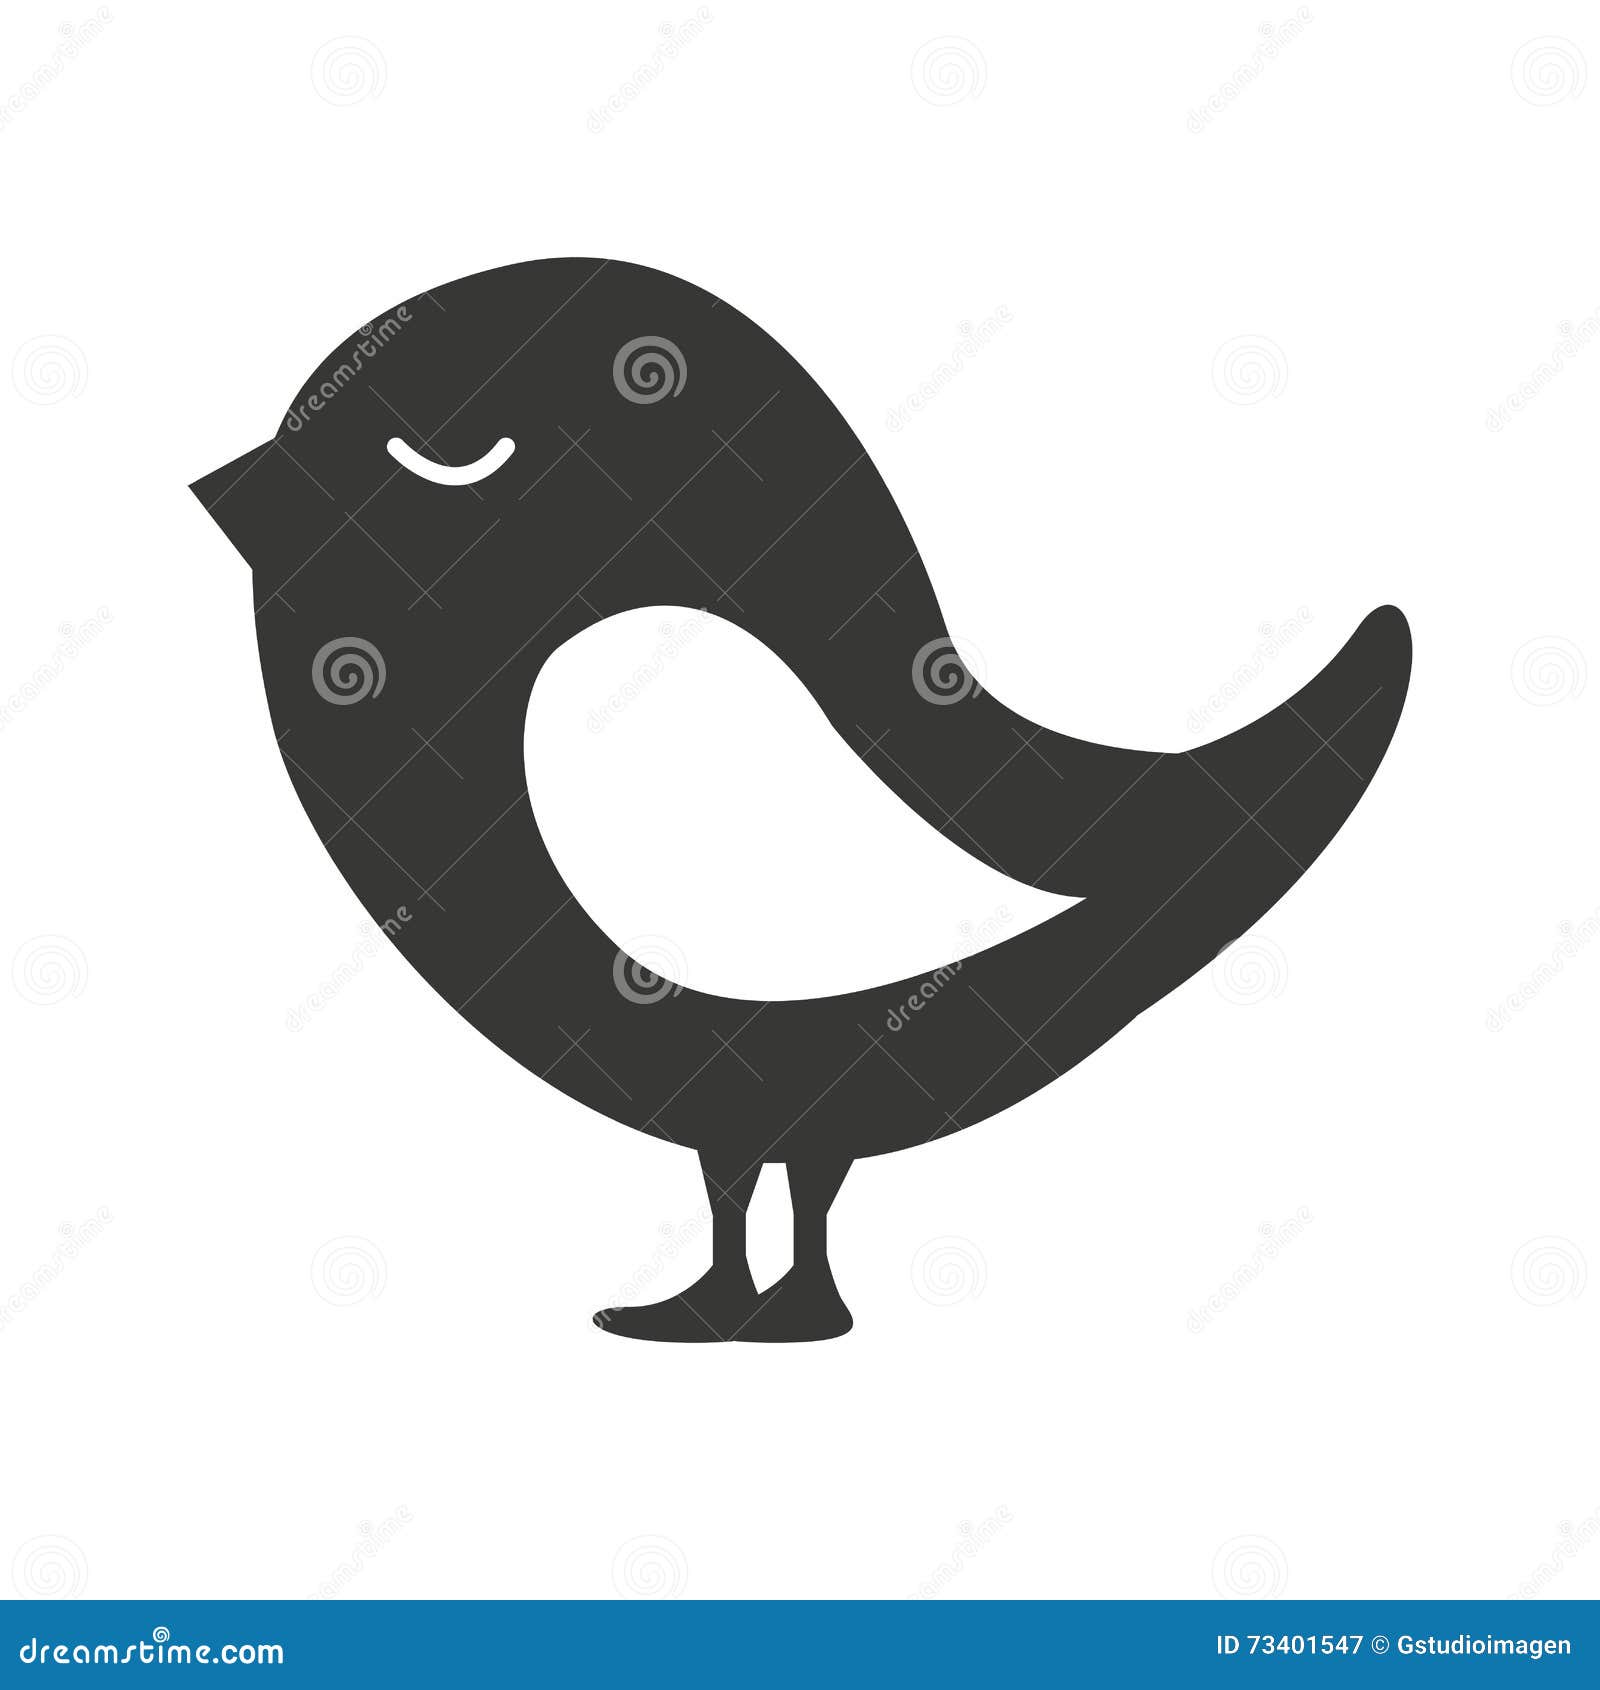 Featured image of post Passaro Silhueta : Faça o download deste silhueta de pássaro passeriforme para png, svg, eps ou psd.